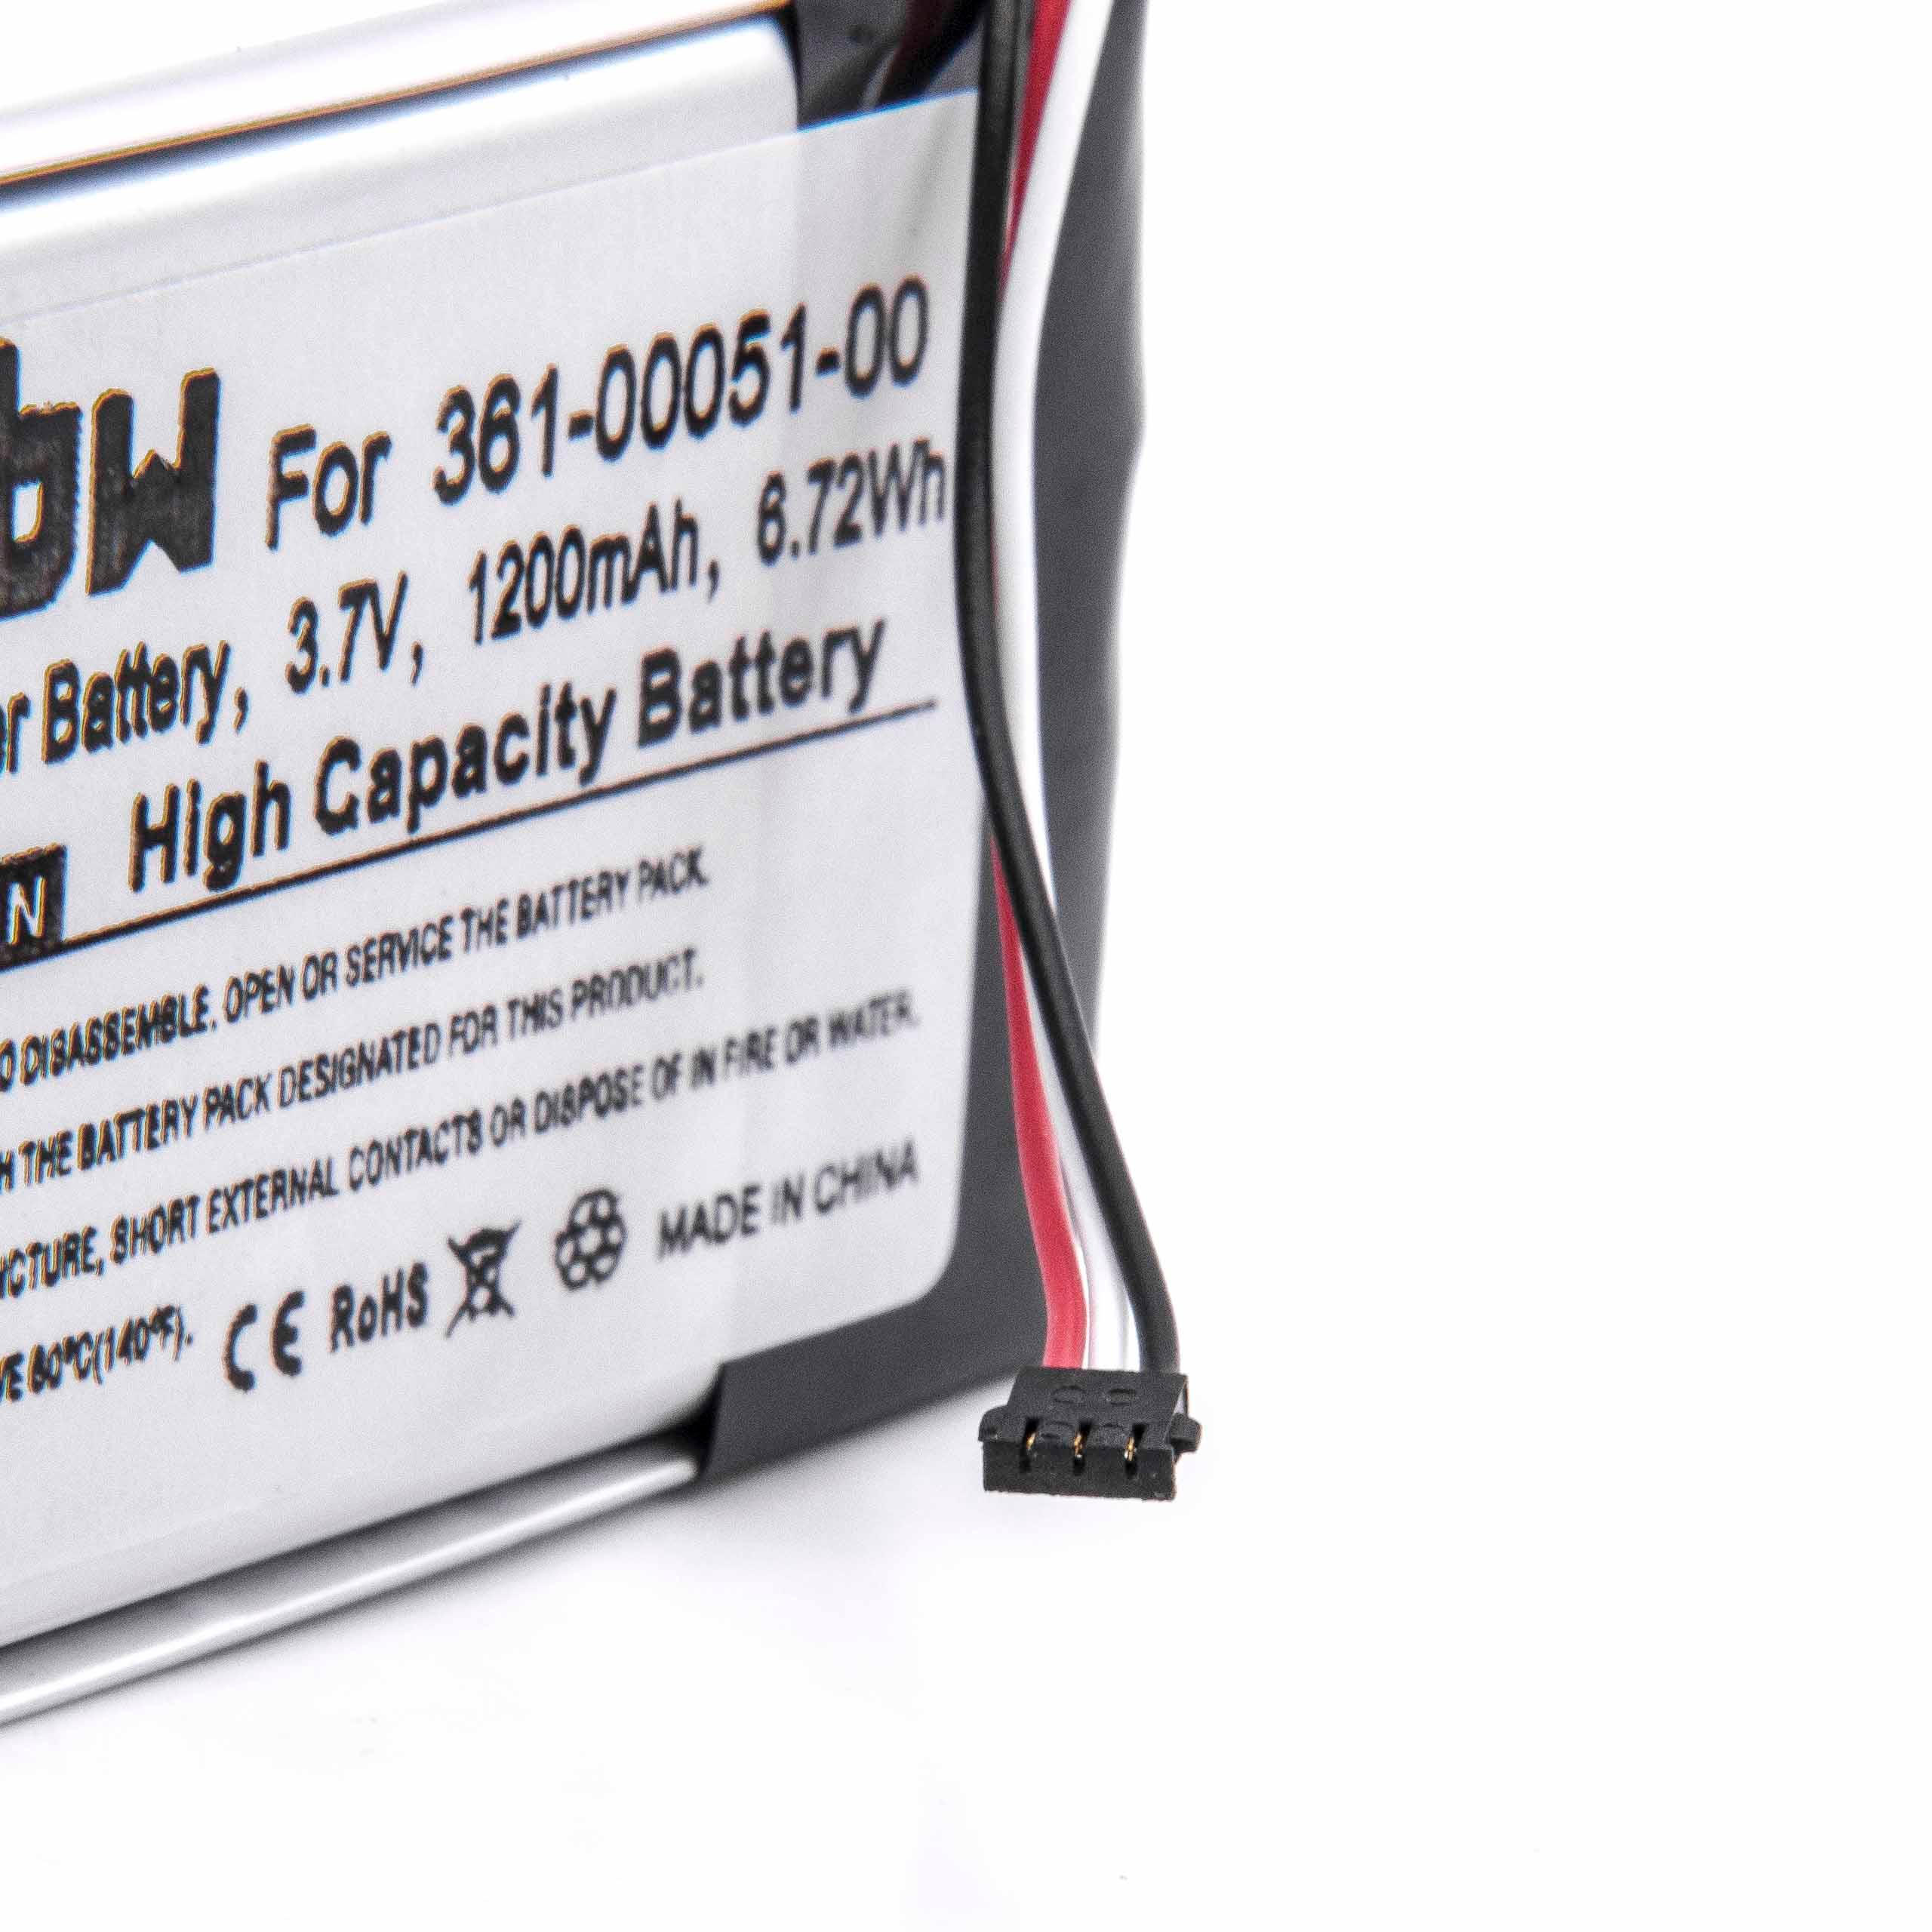 Batteria sostituisce Garmin 361-00051-01, 361-00051-00 per navigatore Garmin - 1200mAh 3,7V Li-Ion